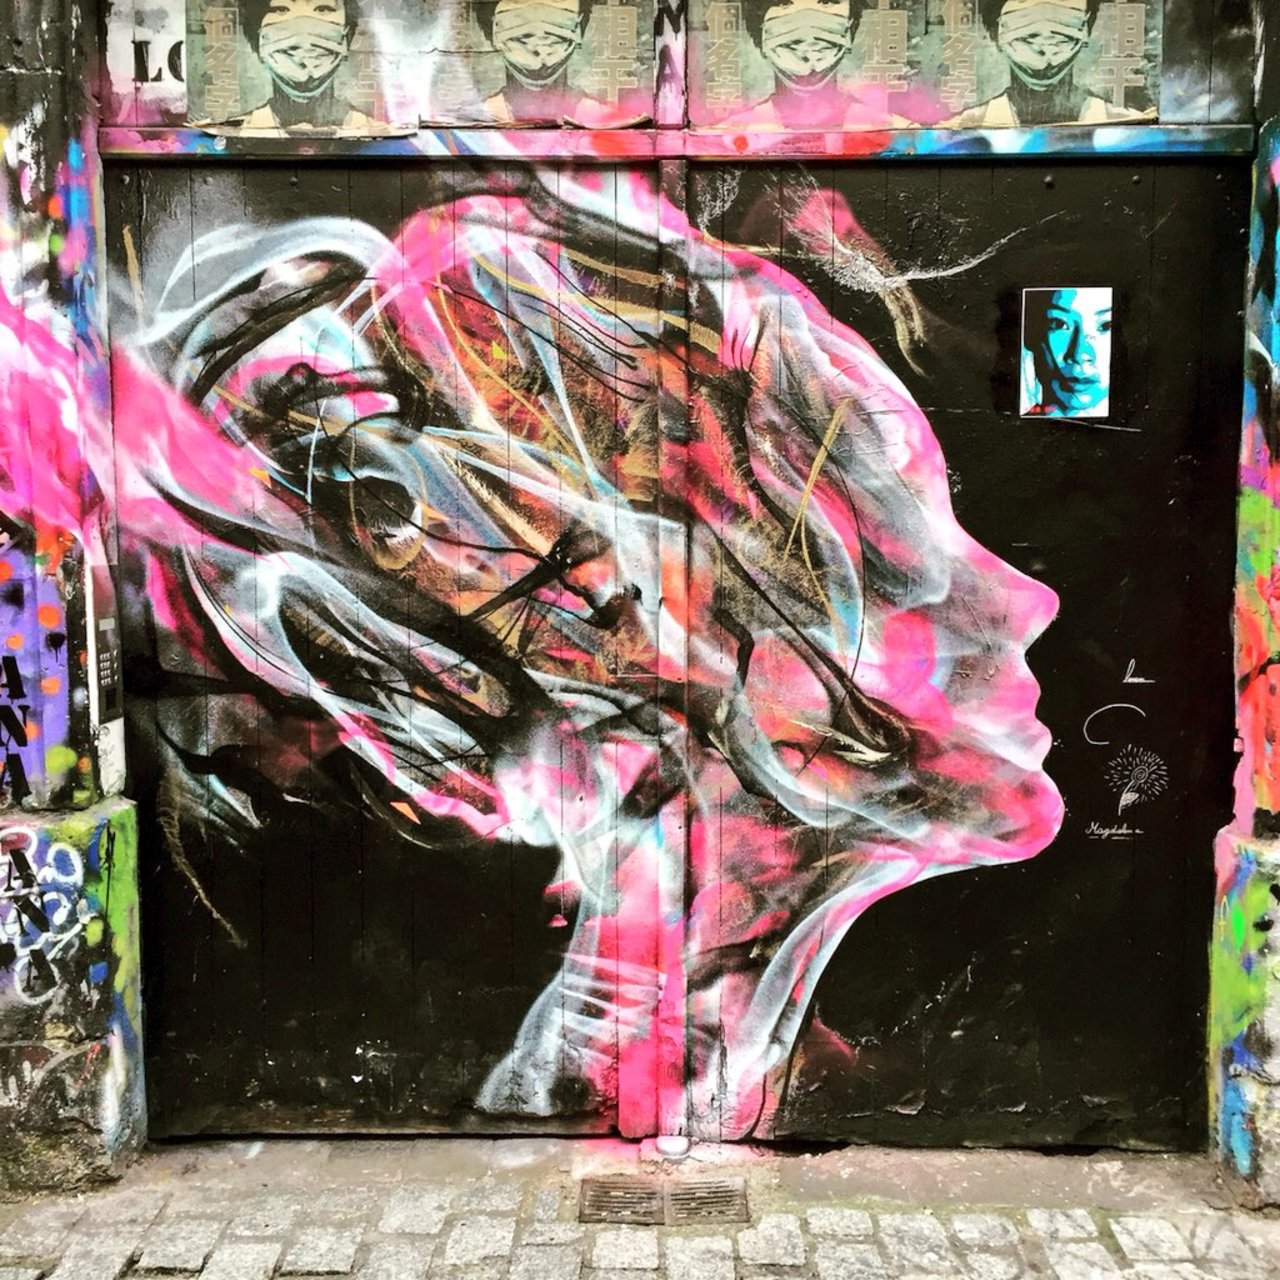 By @_l7m #l7m from #artistfrombrazil #streetart #urbanart #graffiti #wall #streetphoto #spray #nirindastreet #paris https://t.co/pk79qBSSLv